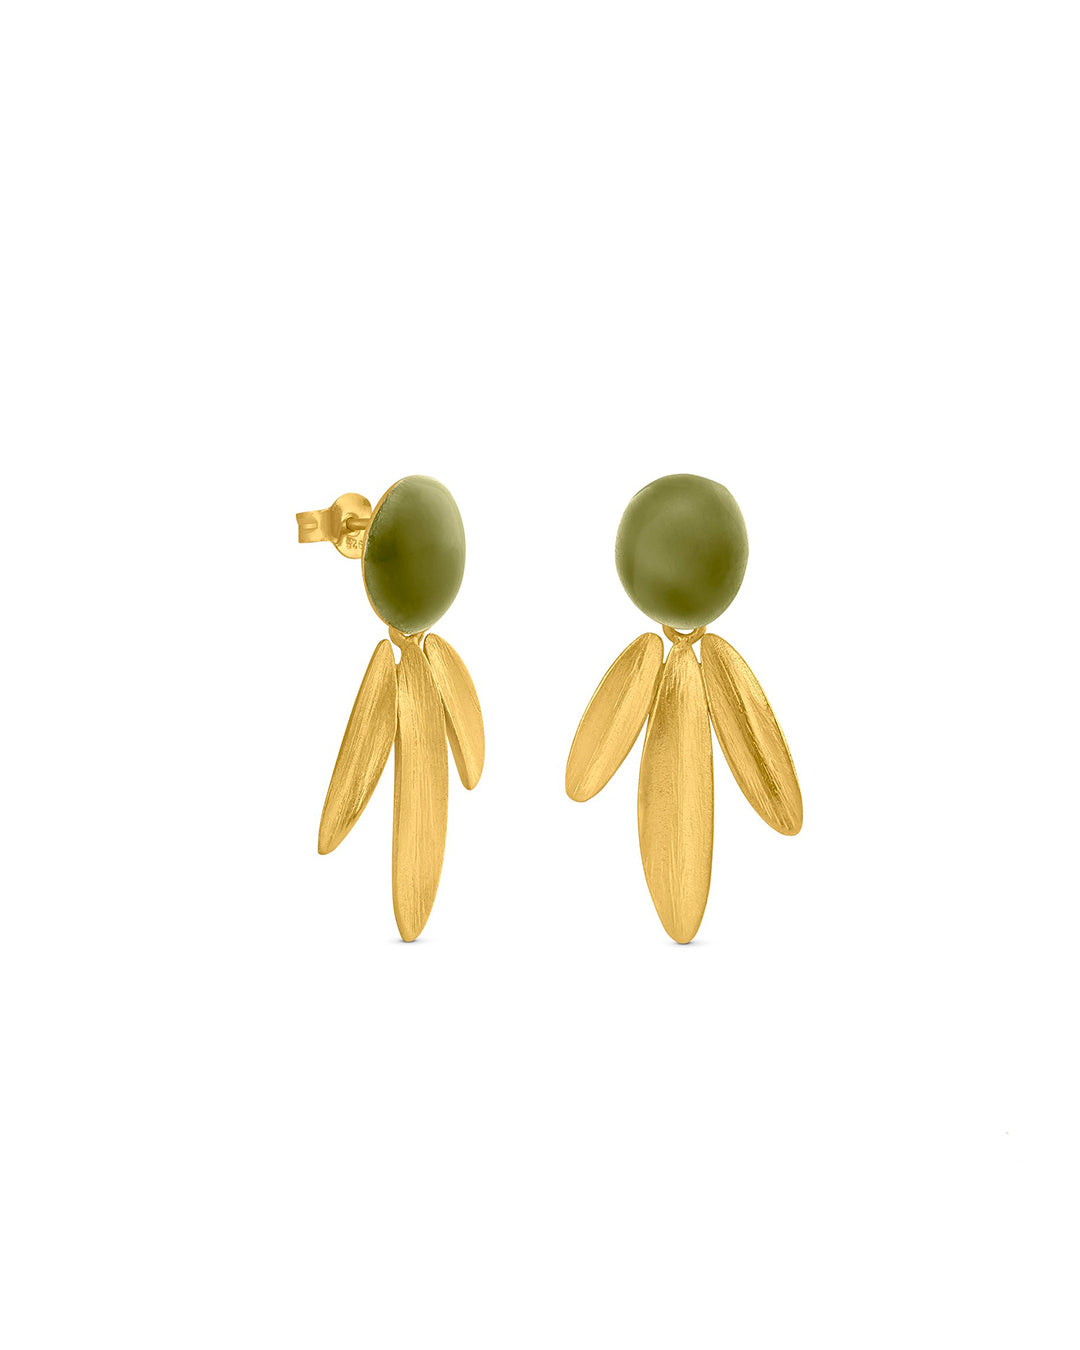 Handmade golden and enameled earrings - Joidart